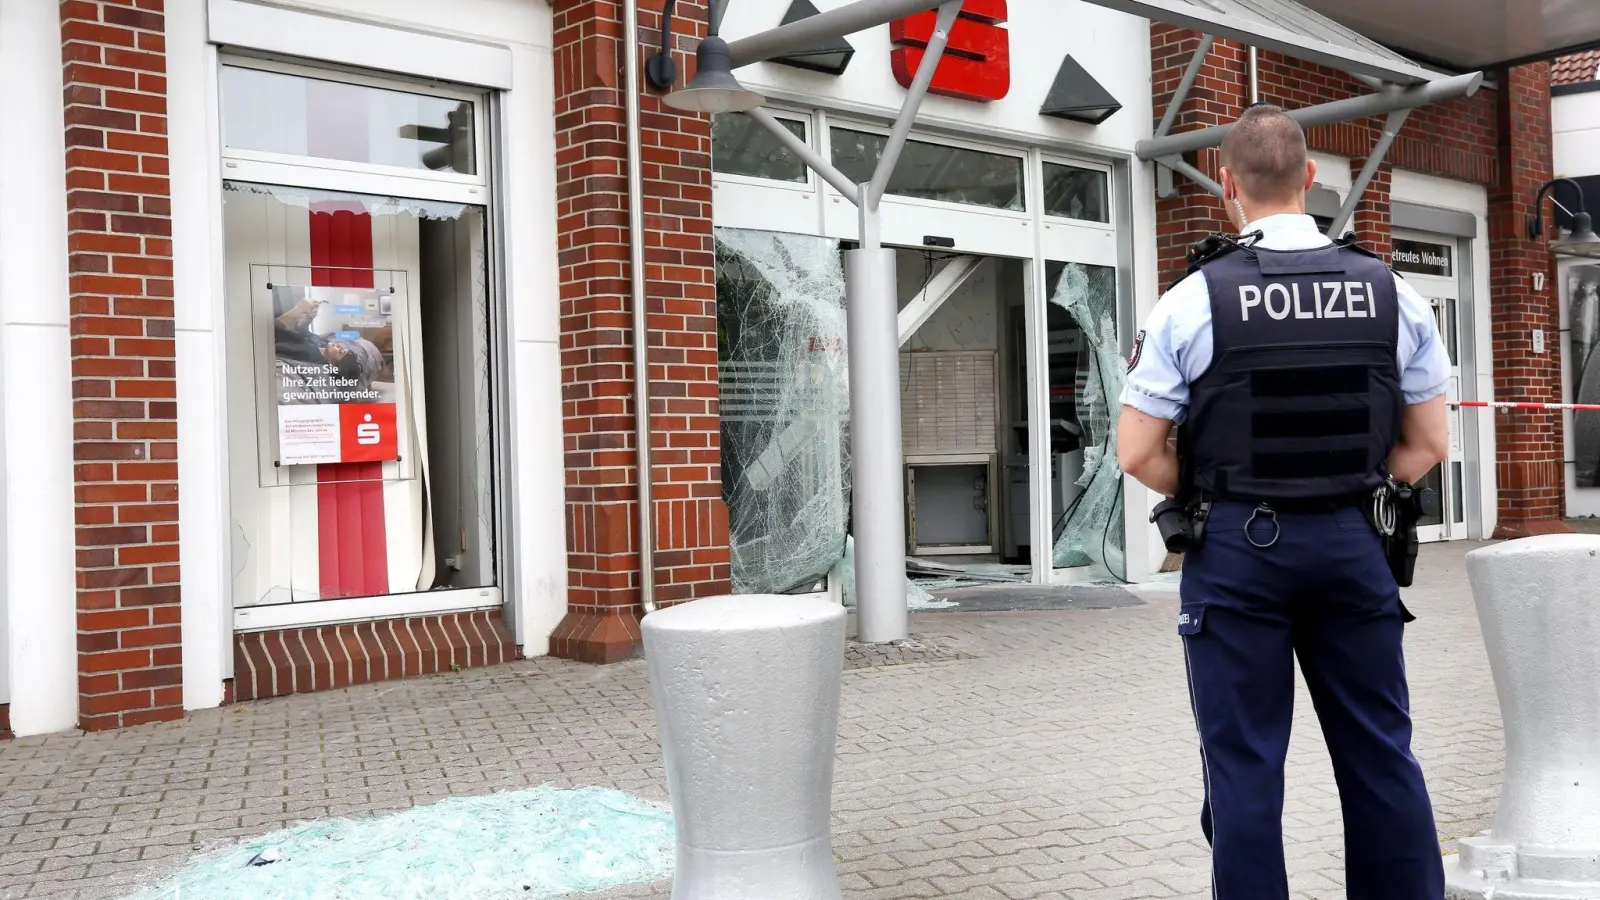 Die Sparkassenfiliale in Castrop-Rauxel ist nach der Sprengung eines Geldautomaten von der Polizei abgesperrt worden. Im Anschluss an die Sprengung gab es mehrere Schüsse vor dem Gebäude. (Foto: Roland Weihrauch/dpa)